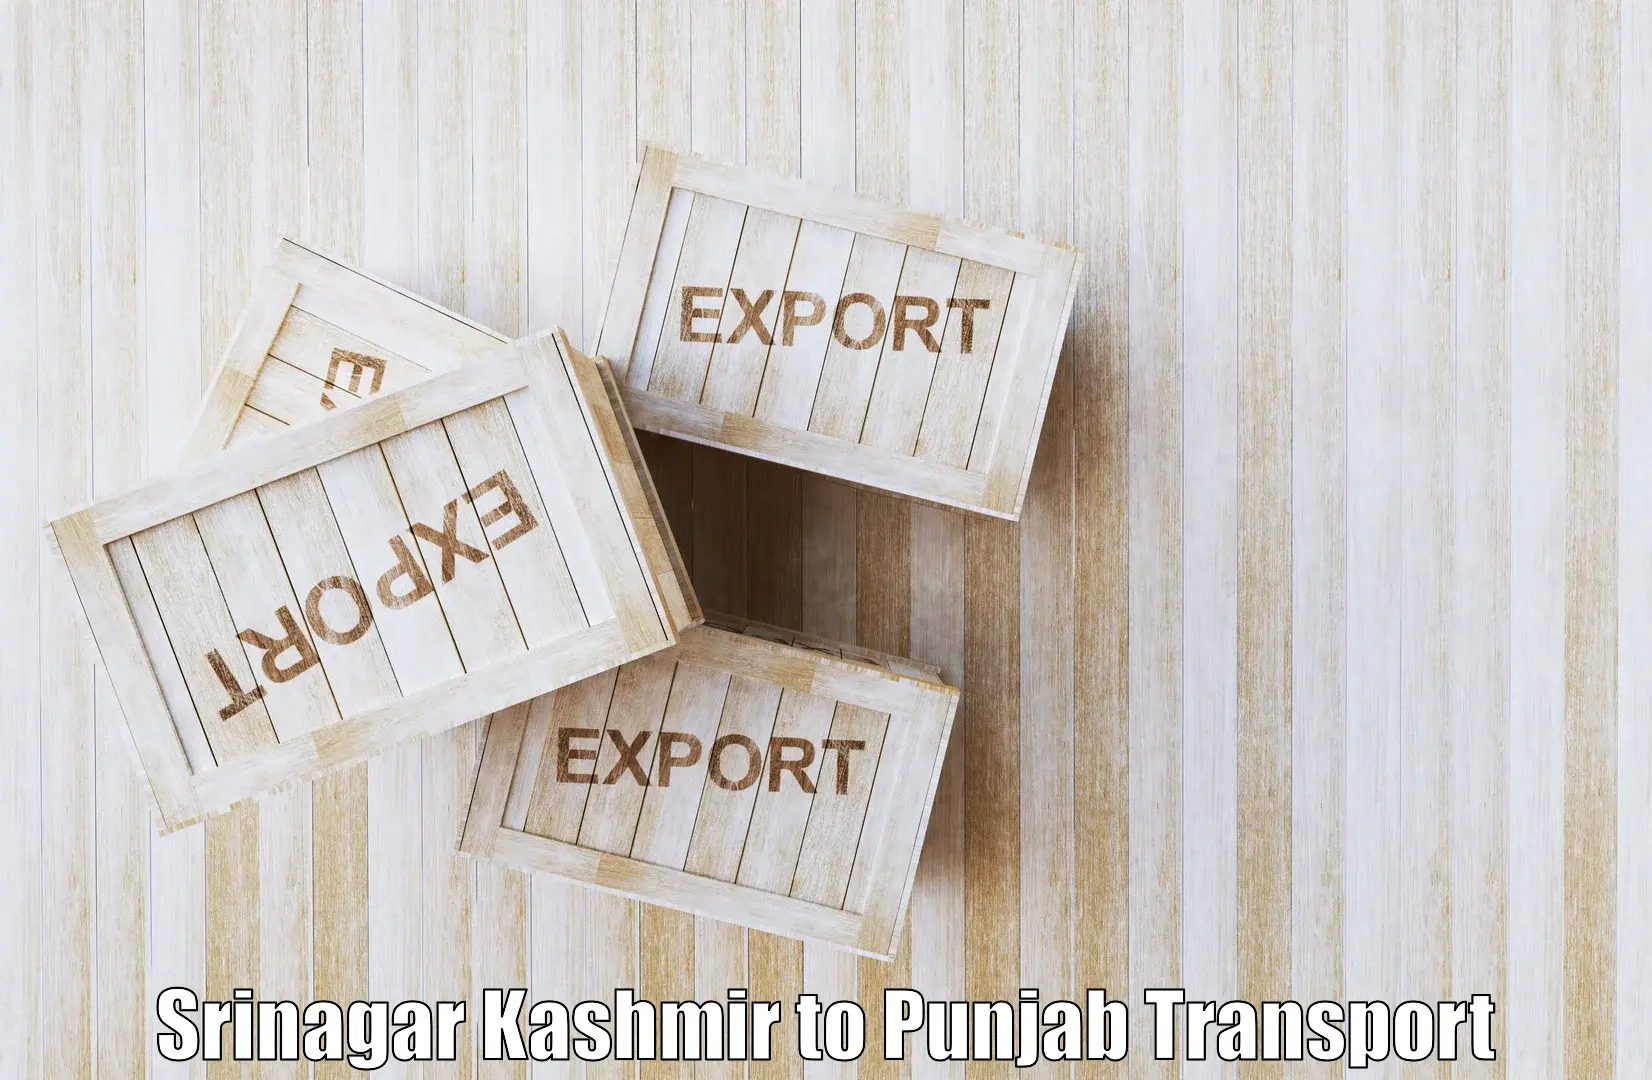 Cargo transportation services Srinagar Kashmir to Malerkotla